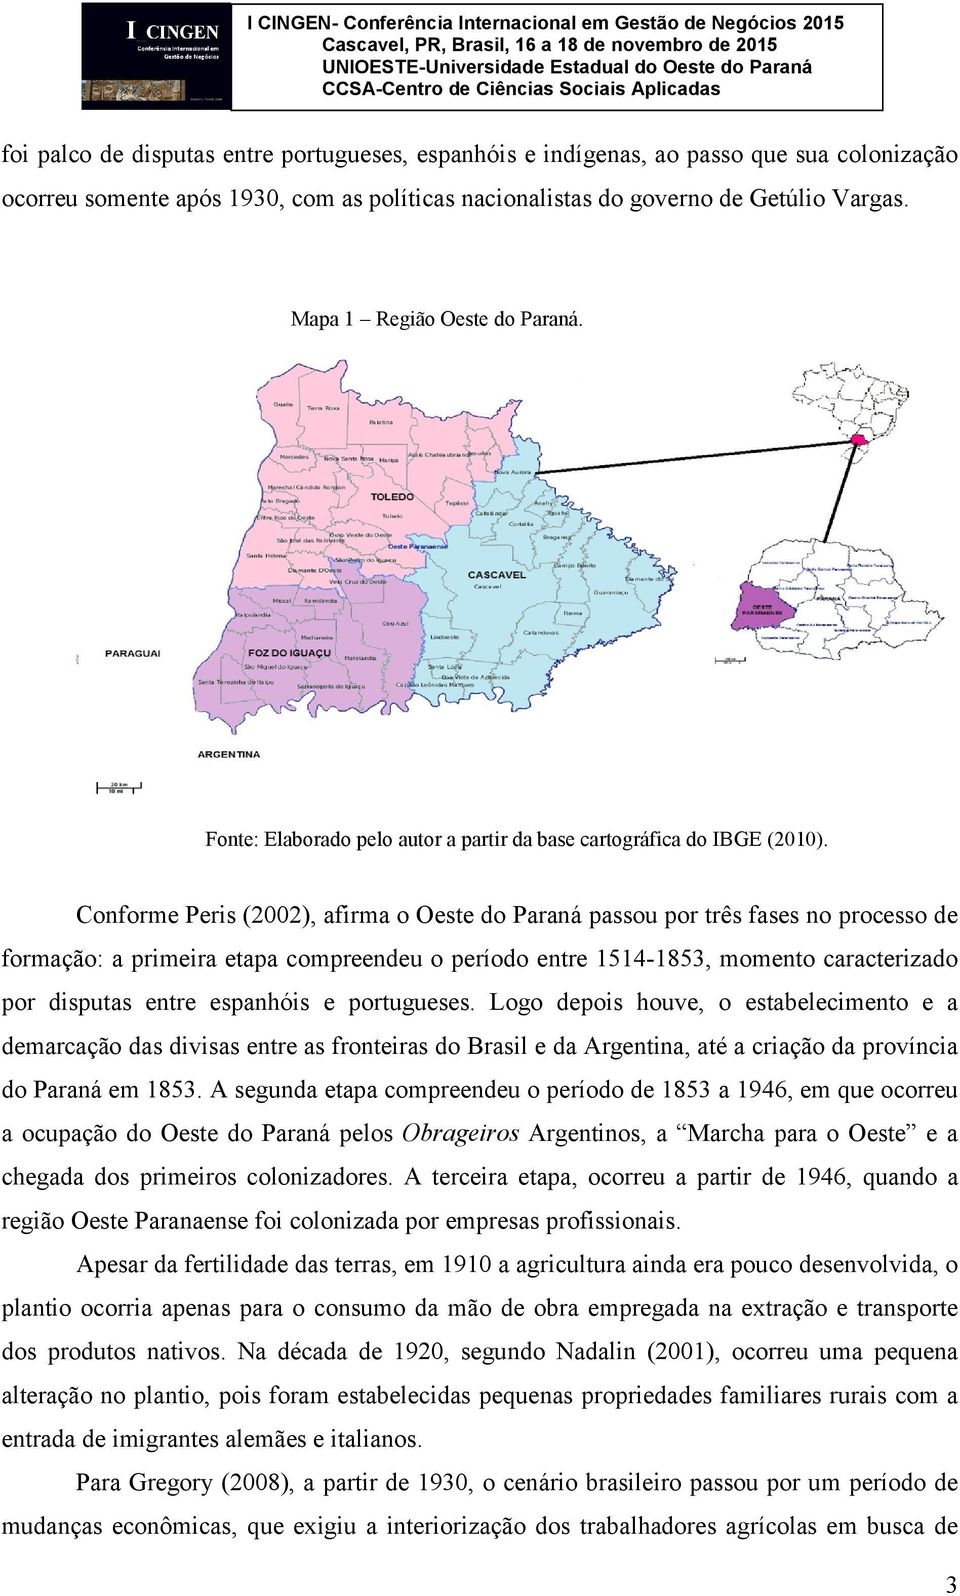 Conforme Peris (2002), afirma o Oeste do Paraná passou por três fases no processo de formação: a primeira etapa compreendeu o período entre 1514-1853, momento caracterizado por disputas entre